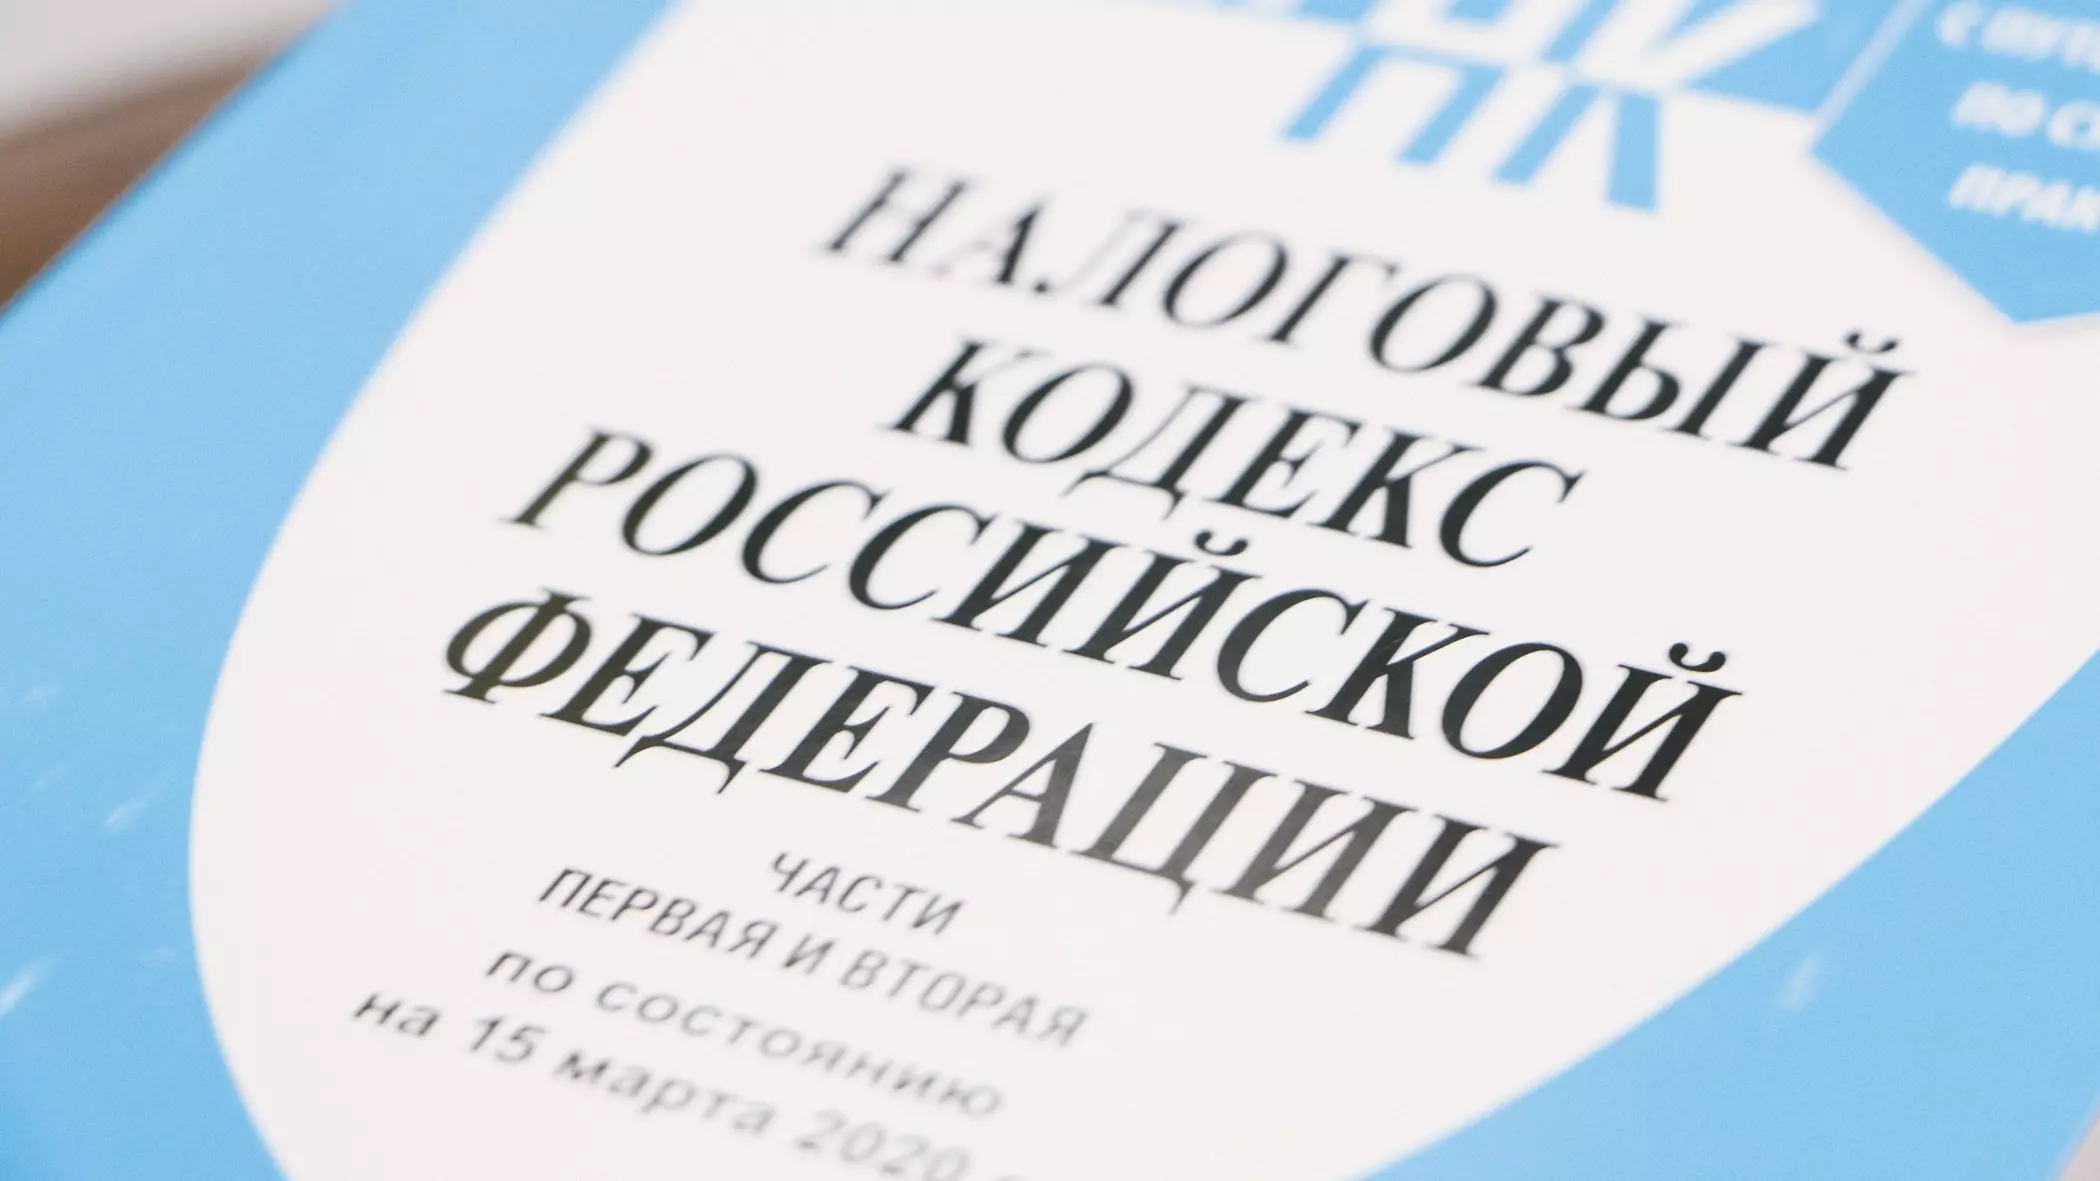 Предприятия в Нижнем Тагиле должны налогов на 5,5 млрд рублей